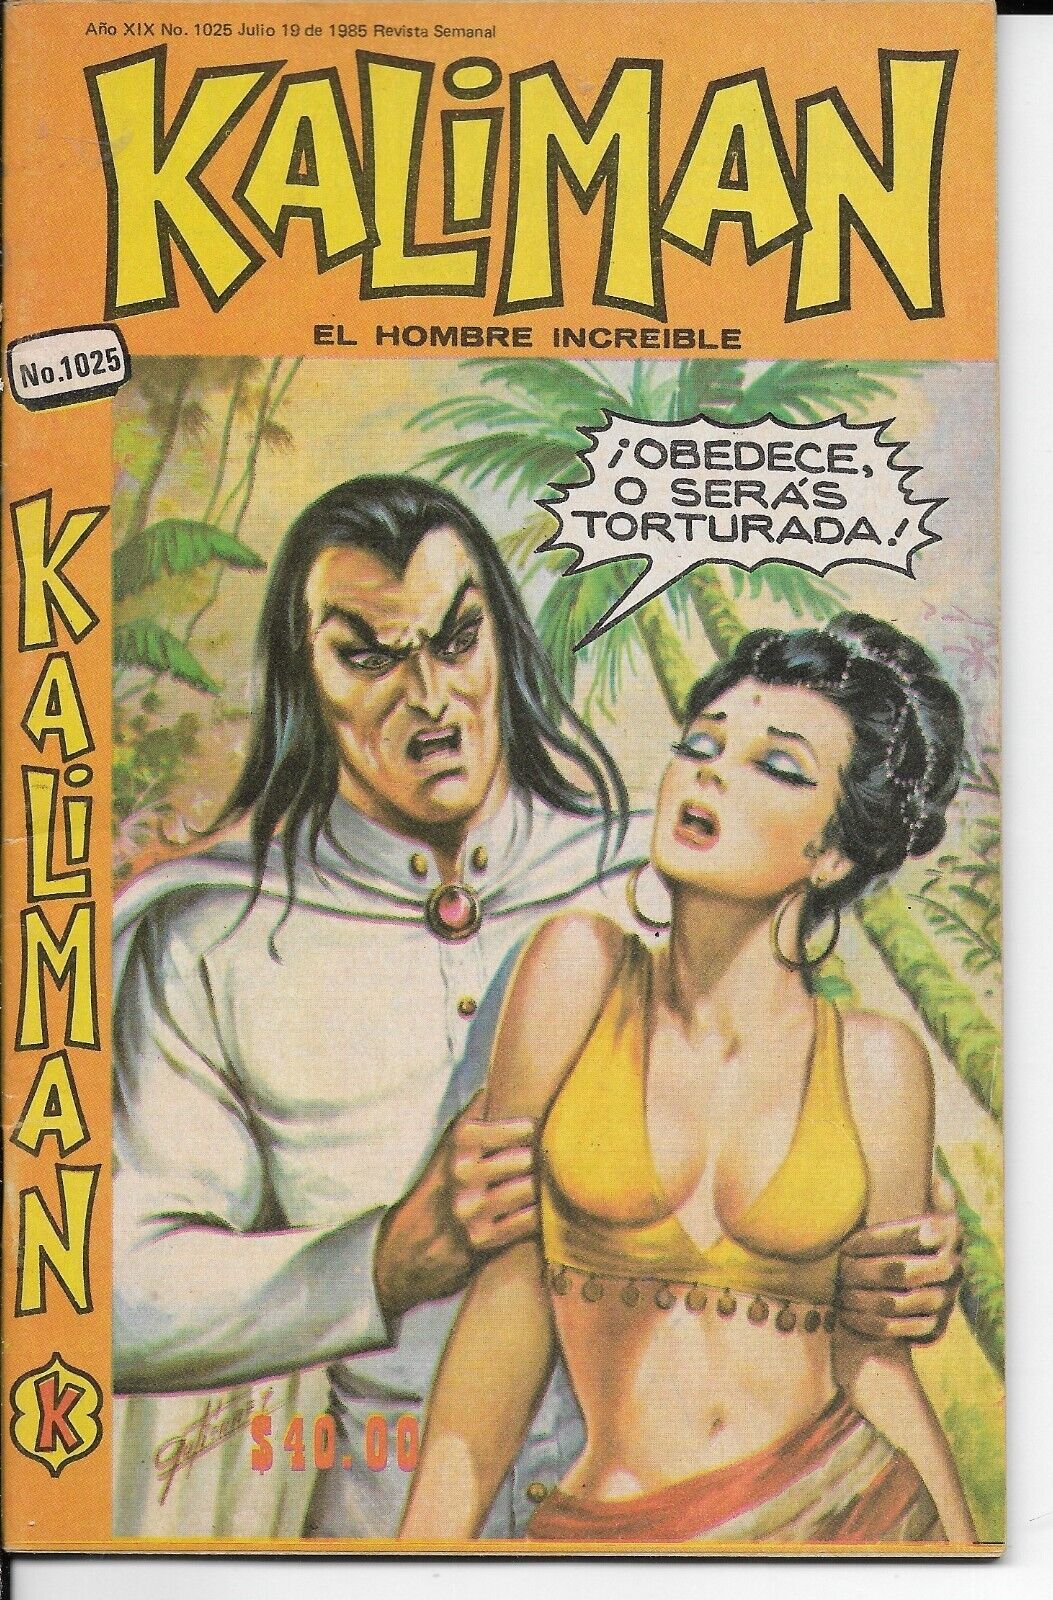 Kaliman El Hombre Increible #1025 - Julio19, 1985 - Mexico